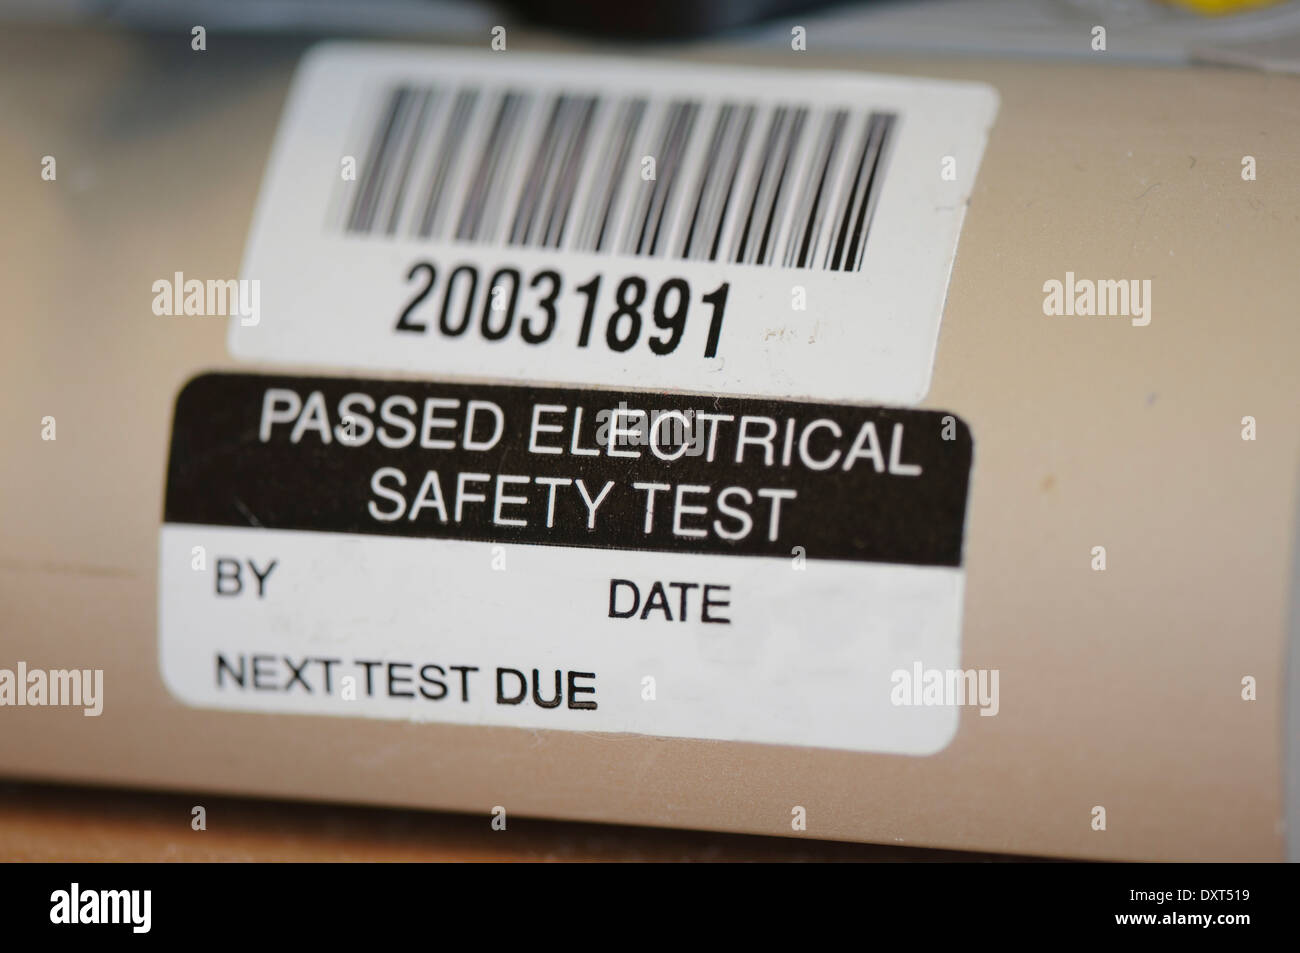 Adesivo su un apparecchio elettrico che indica che è stato superato un test di sicurezza Foto Stock